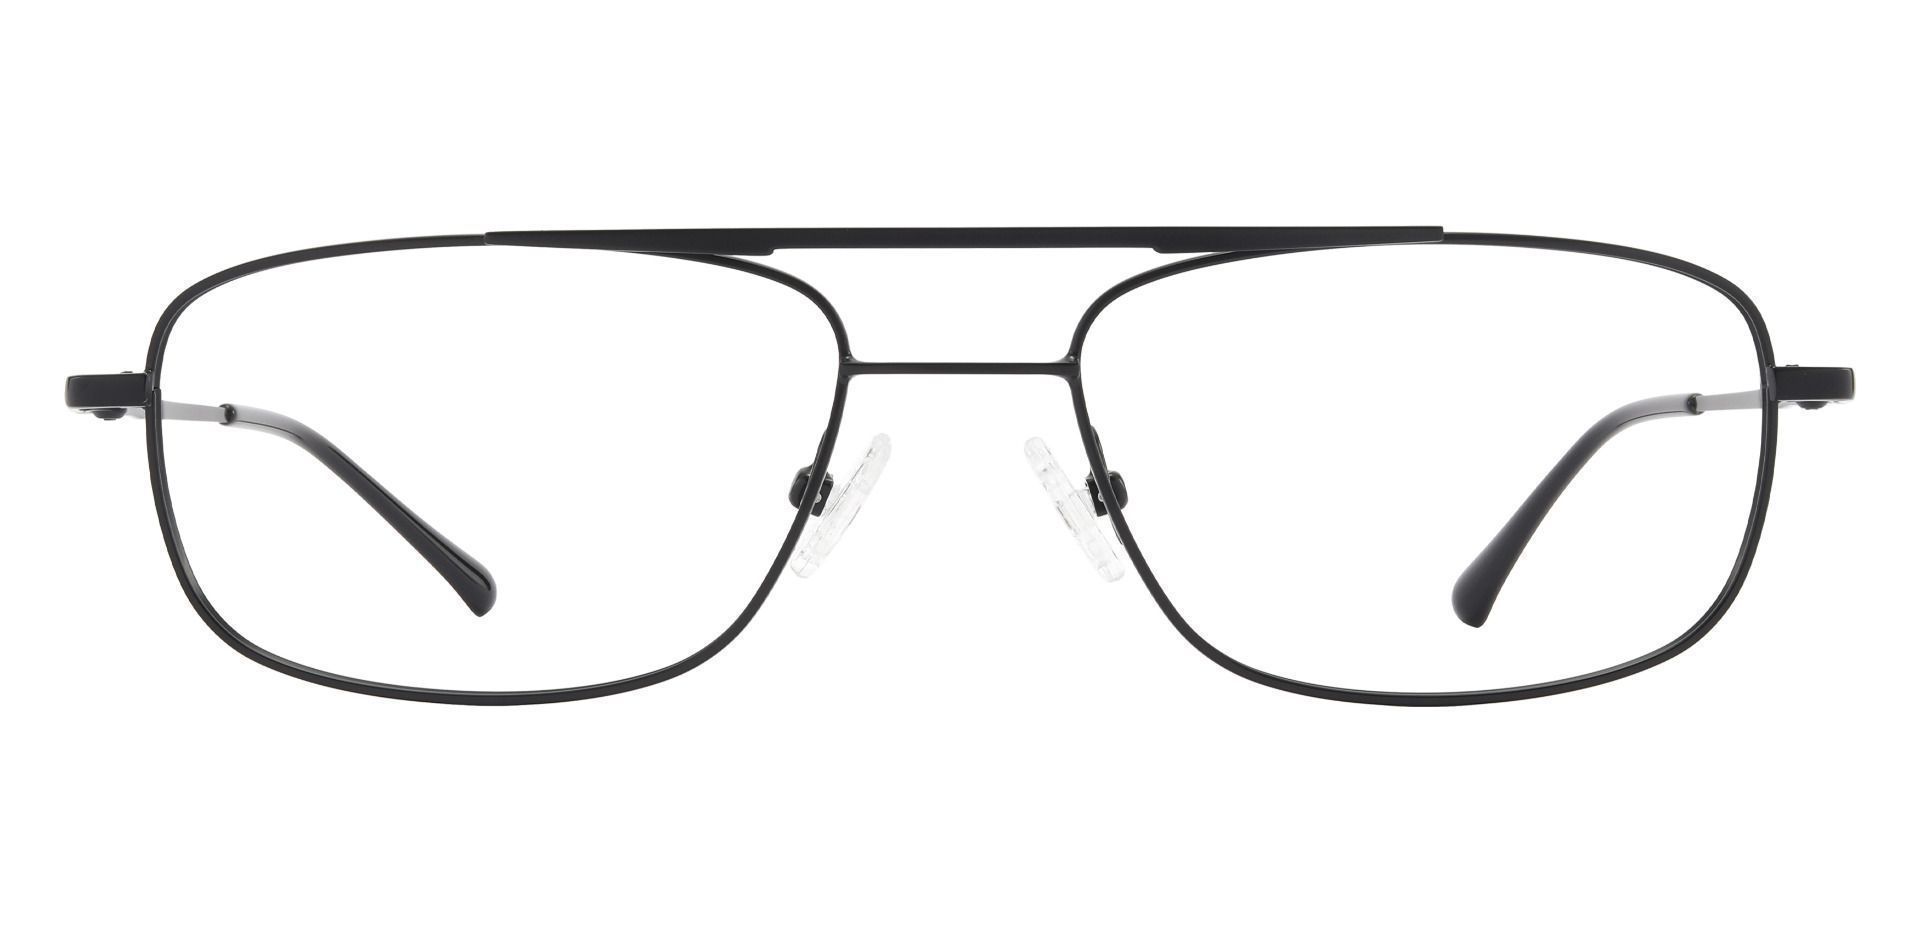 Hugo Aviator Eyeglasses Frame - Black